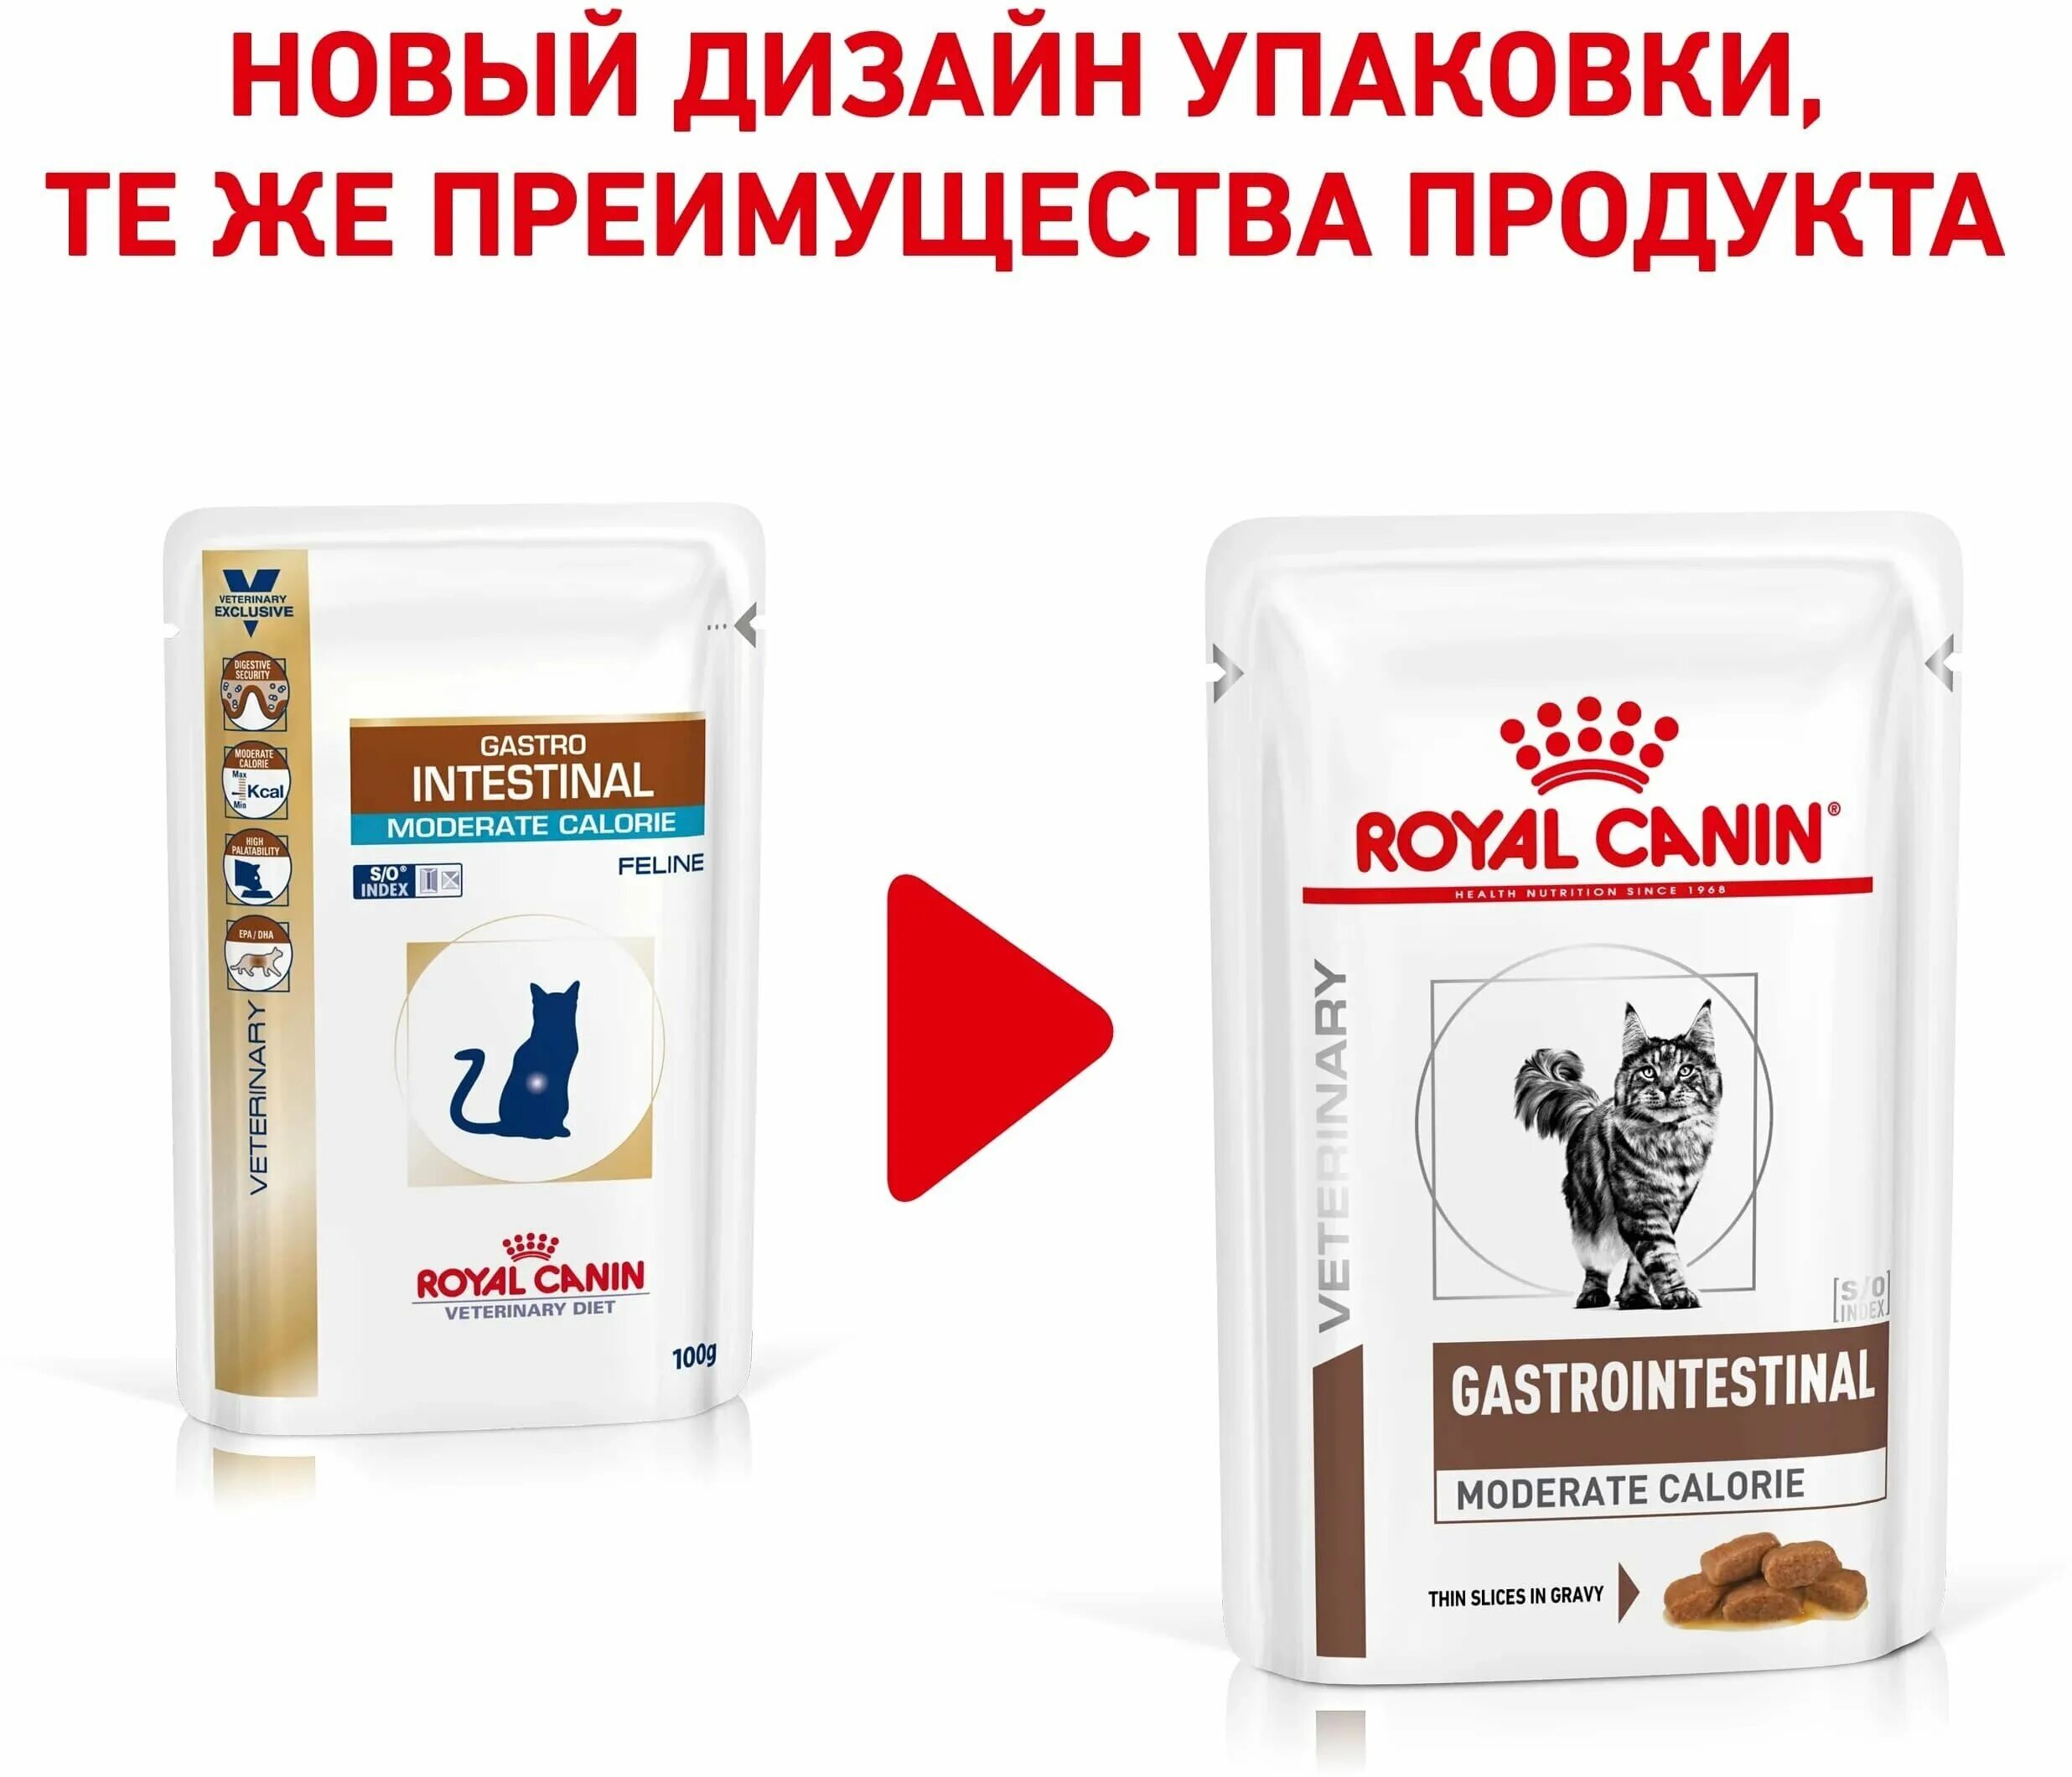 Royal canin gastrointestinal для кошек сухой. Royal Canin Gastrointestinal moderate Calorie для кошек. Royal Canin moderate Calorie. Роял гастро Интестинал. Корм гастро Интестинал для кошек влажный.